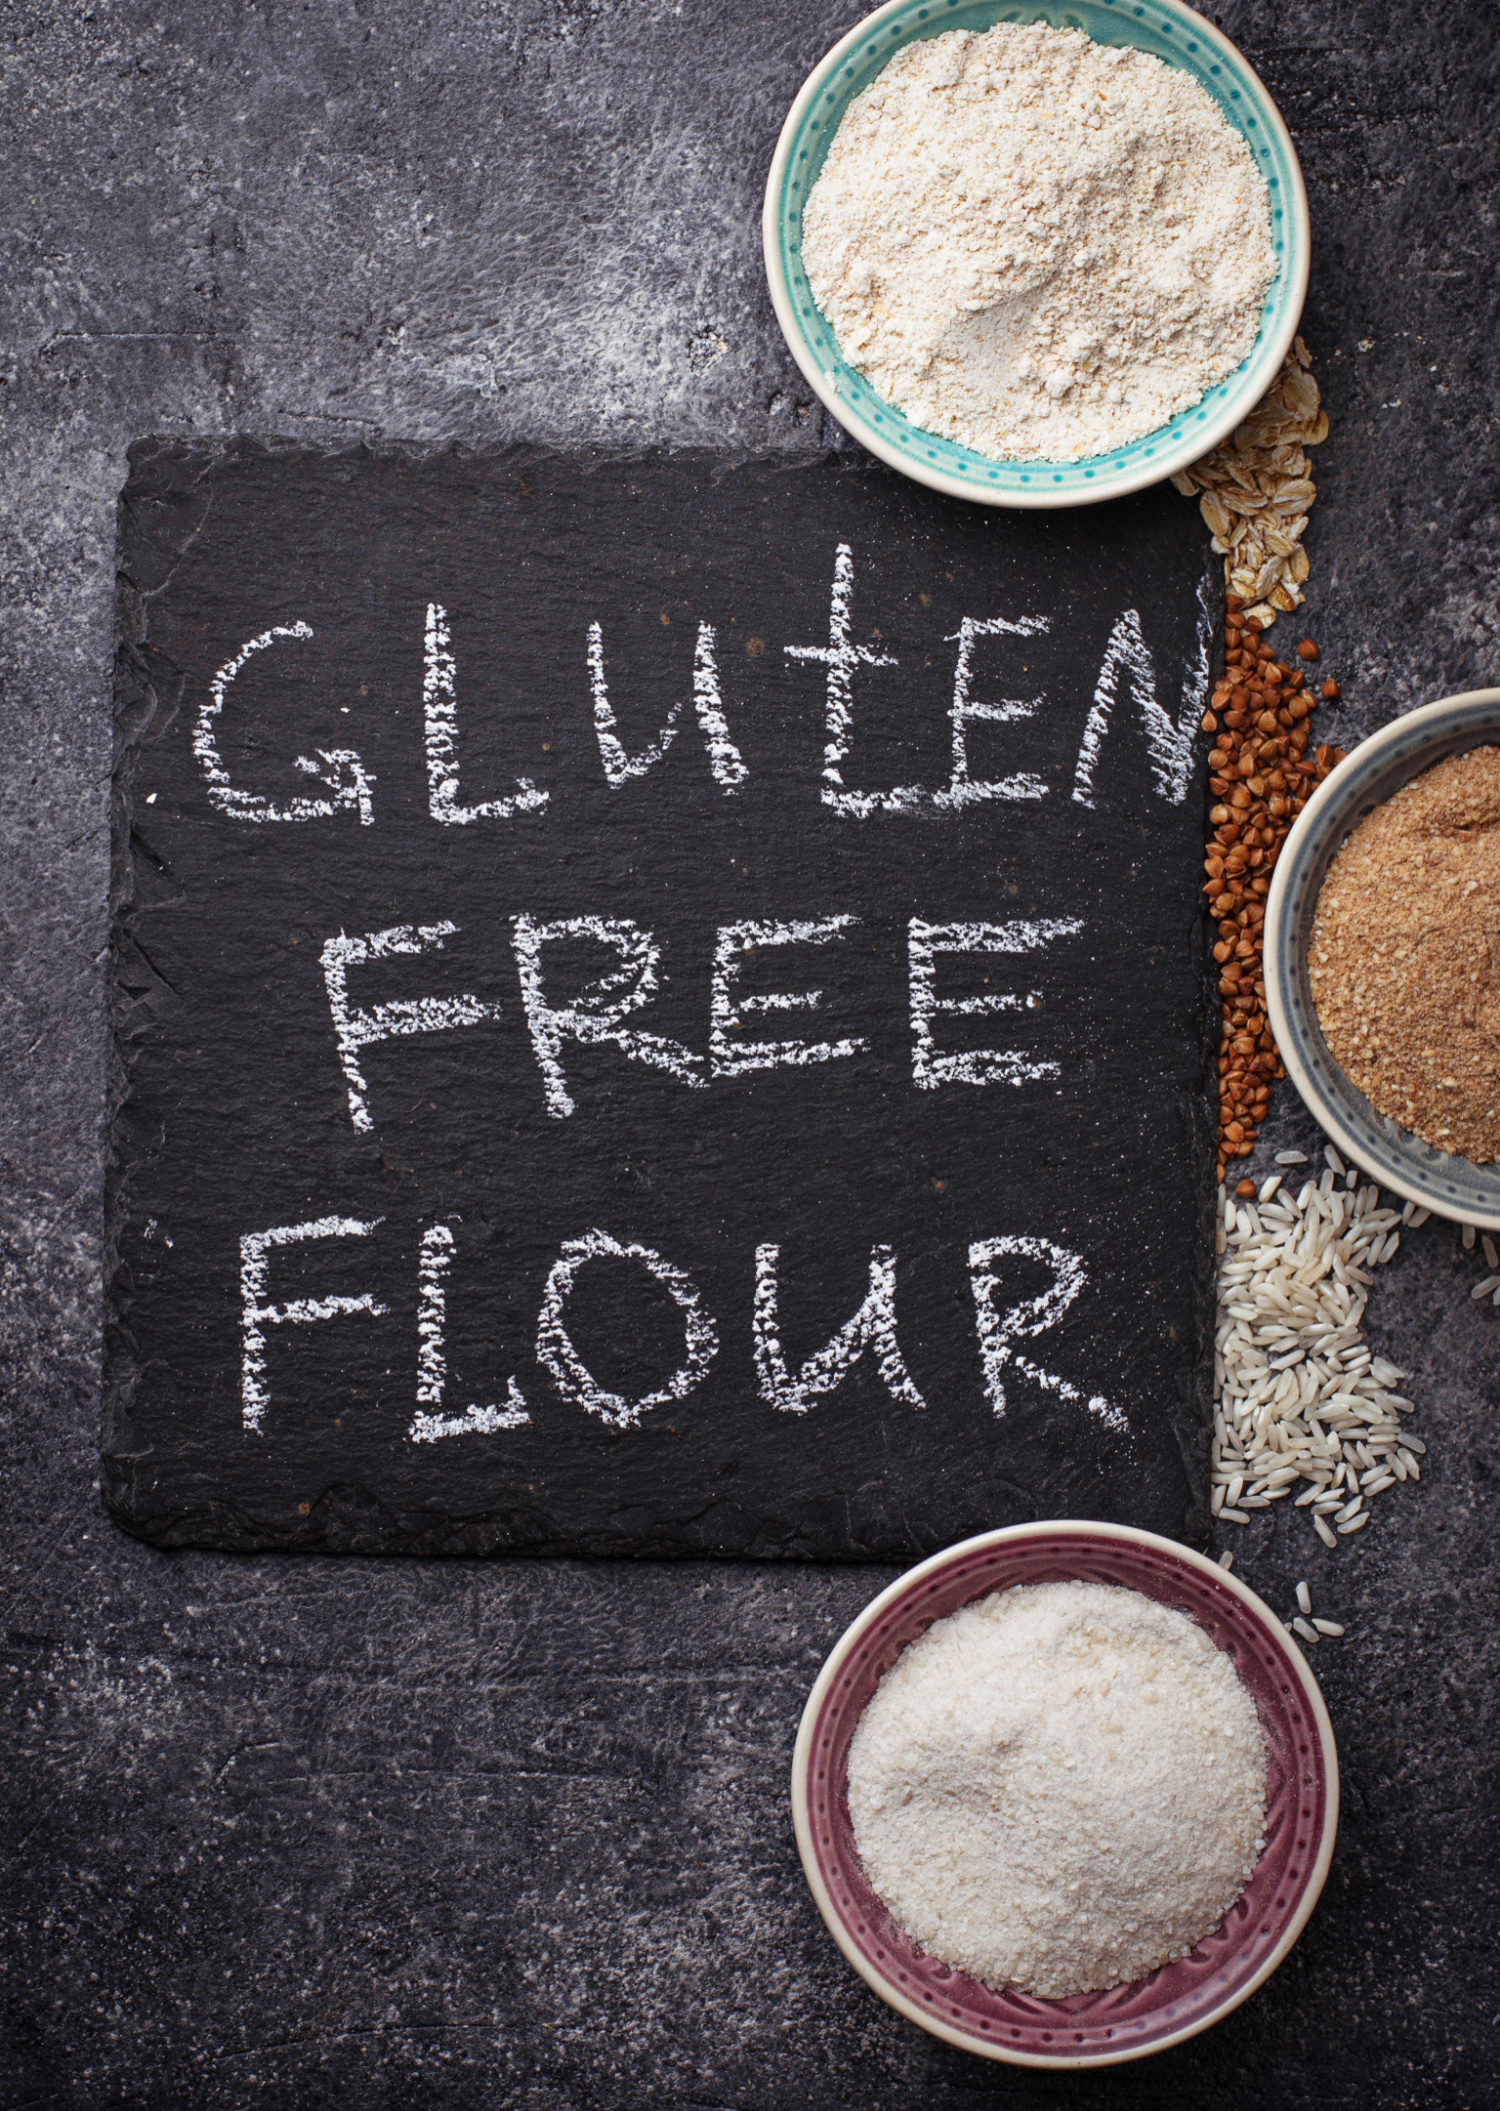 Gluten free flour on a chalkboard.